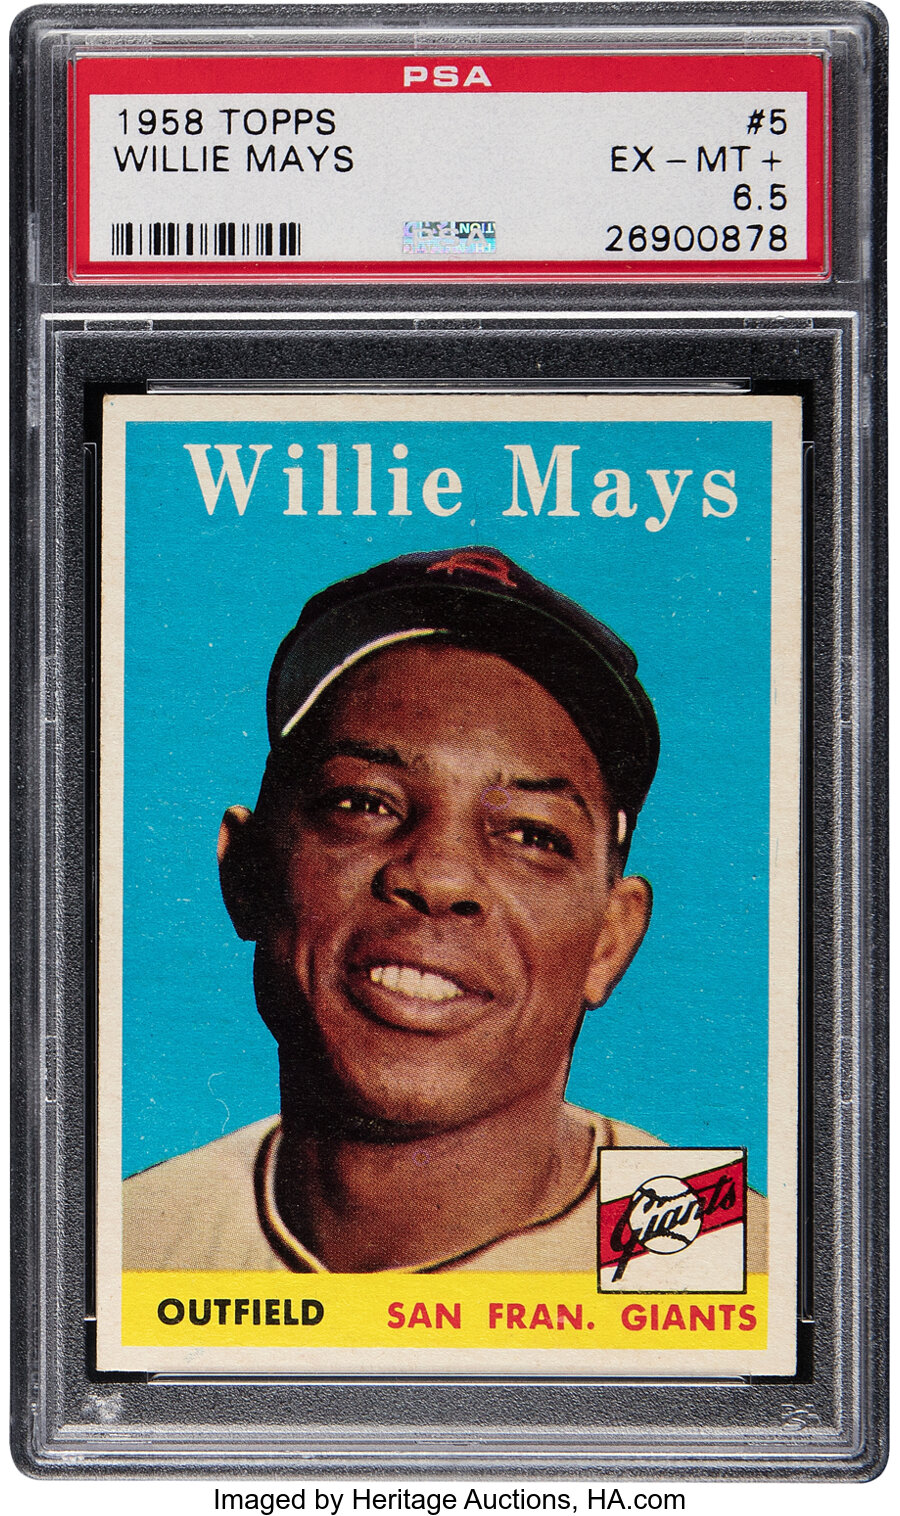 1958 Topps Willie Mays #5 PSA EX-MT+ 6.5